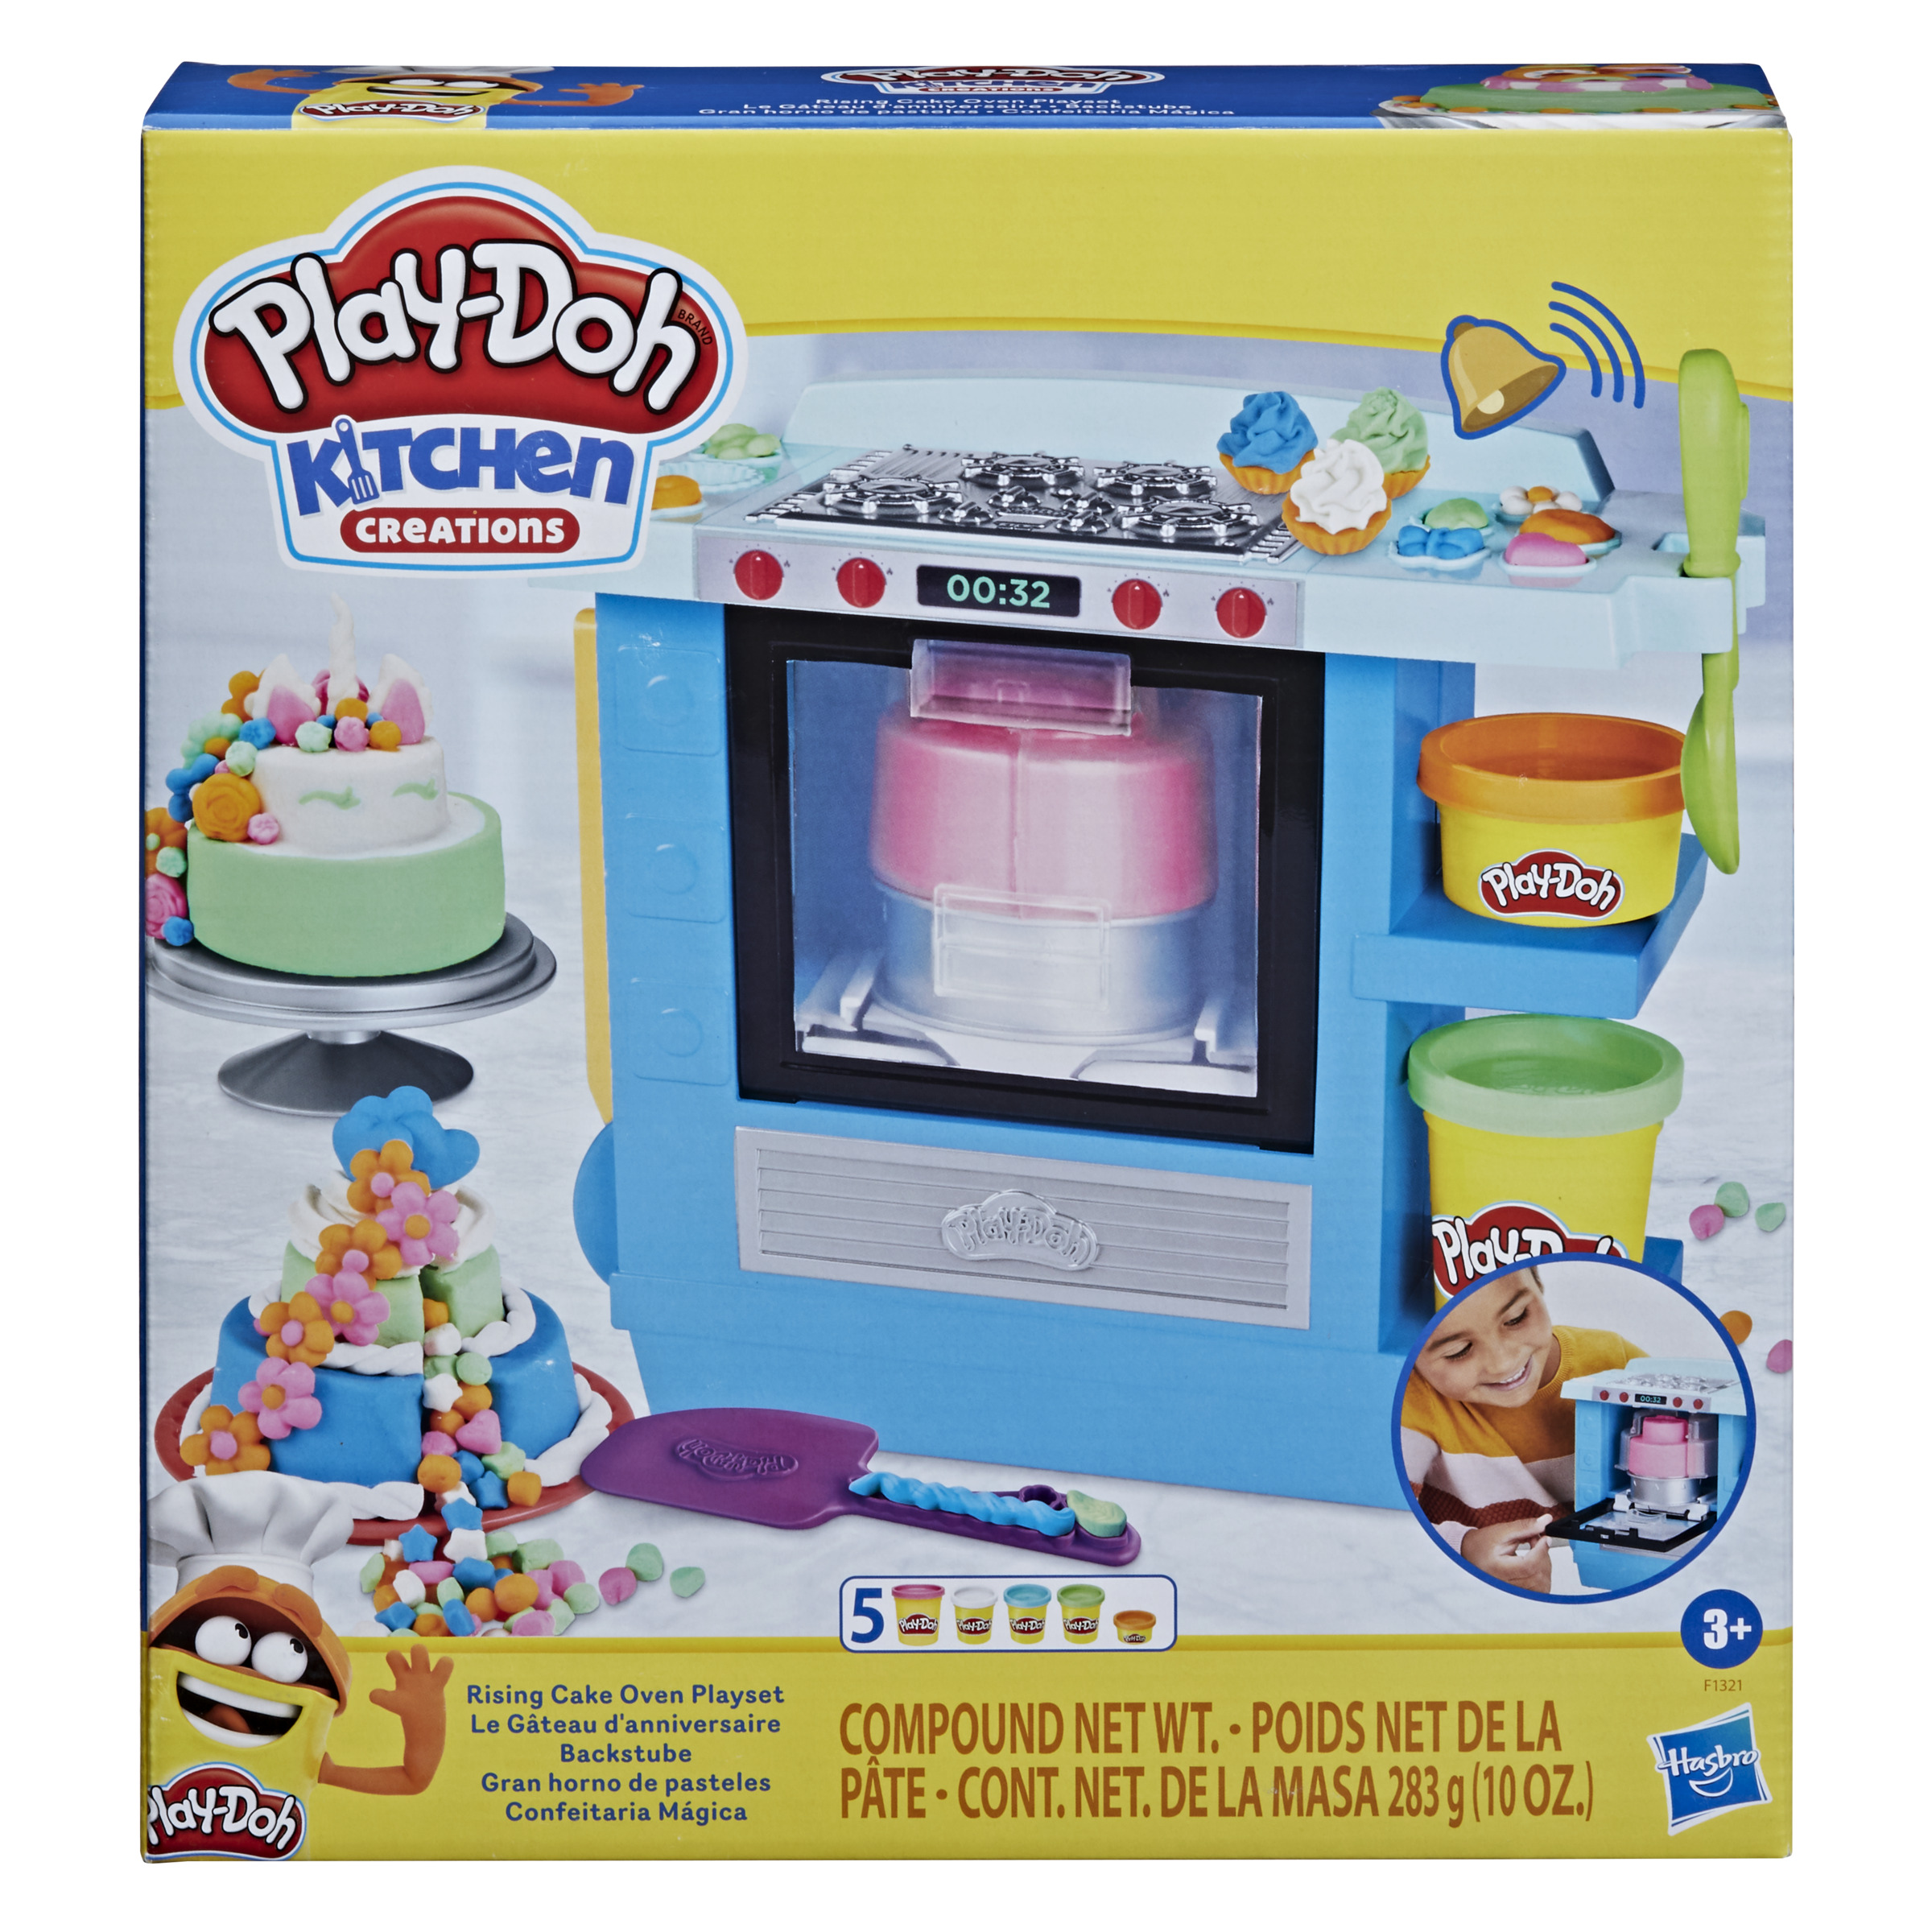 Hasbro - PLAY-DOH GRAN HORNO DE PASTELES - Juguete creativo - Play-Doh  - 3 AÑOS+